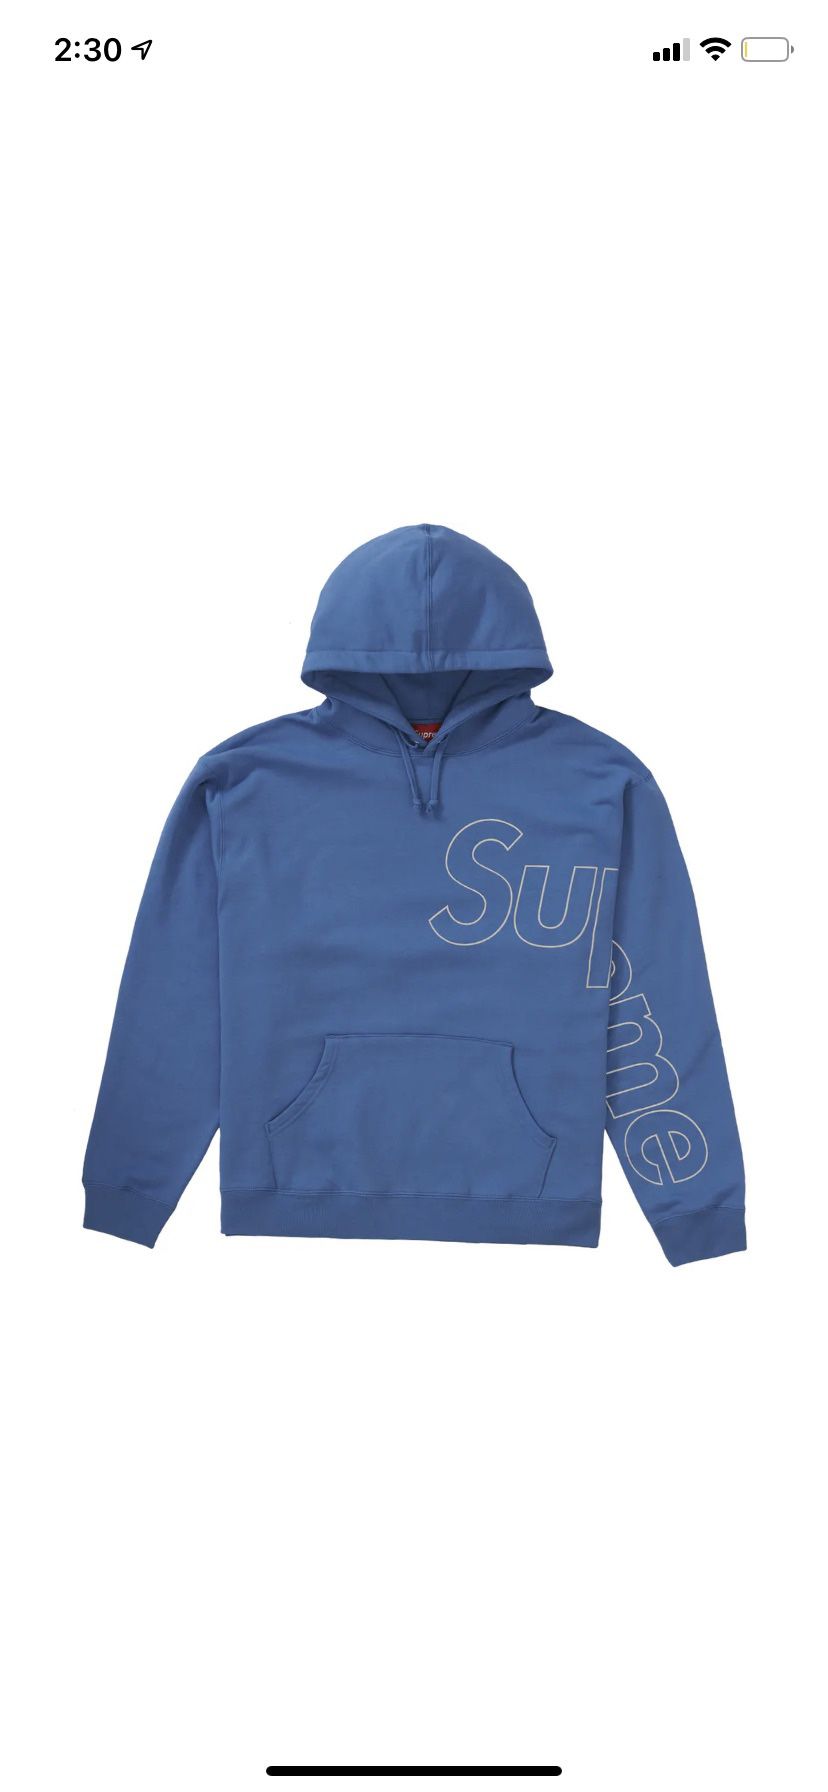 Supreme Reflective Hooded Sweatshirt Size Small